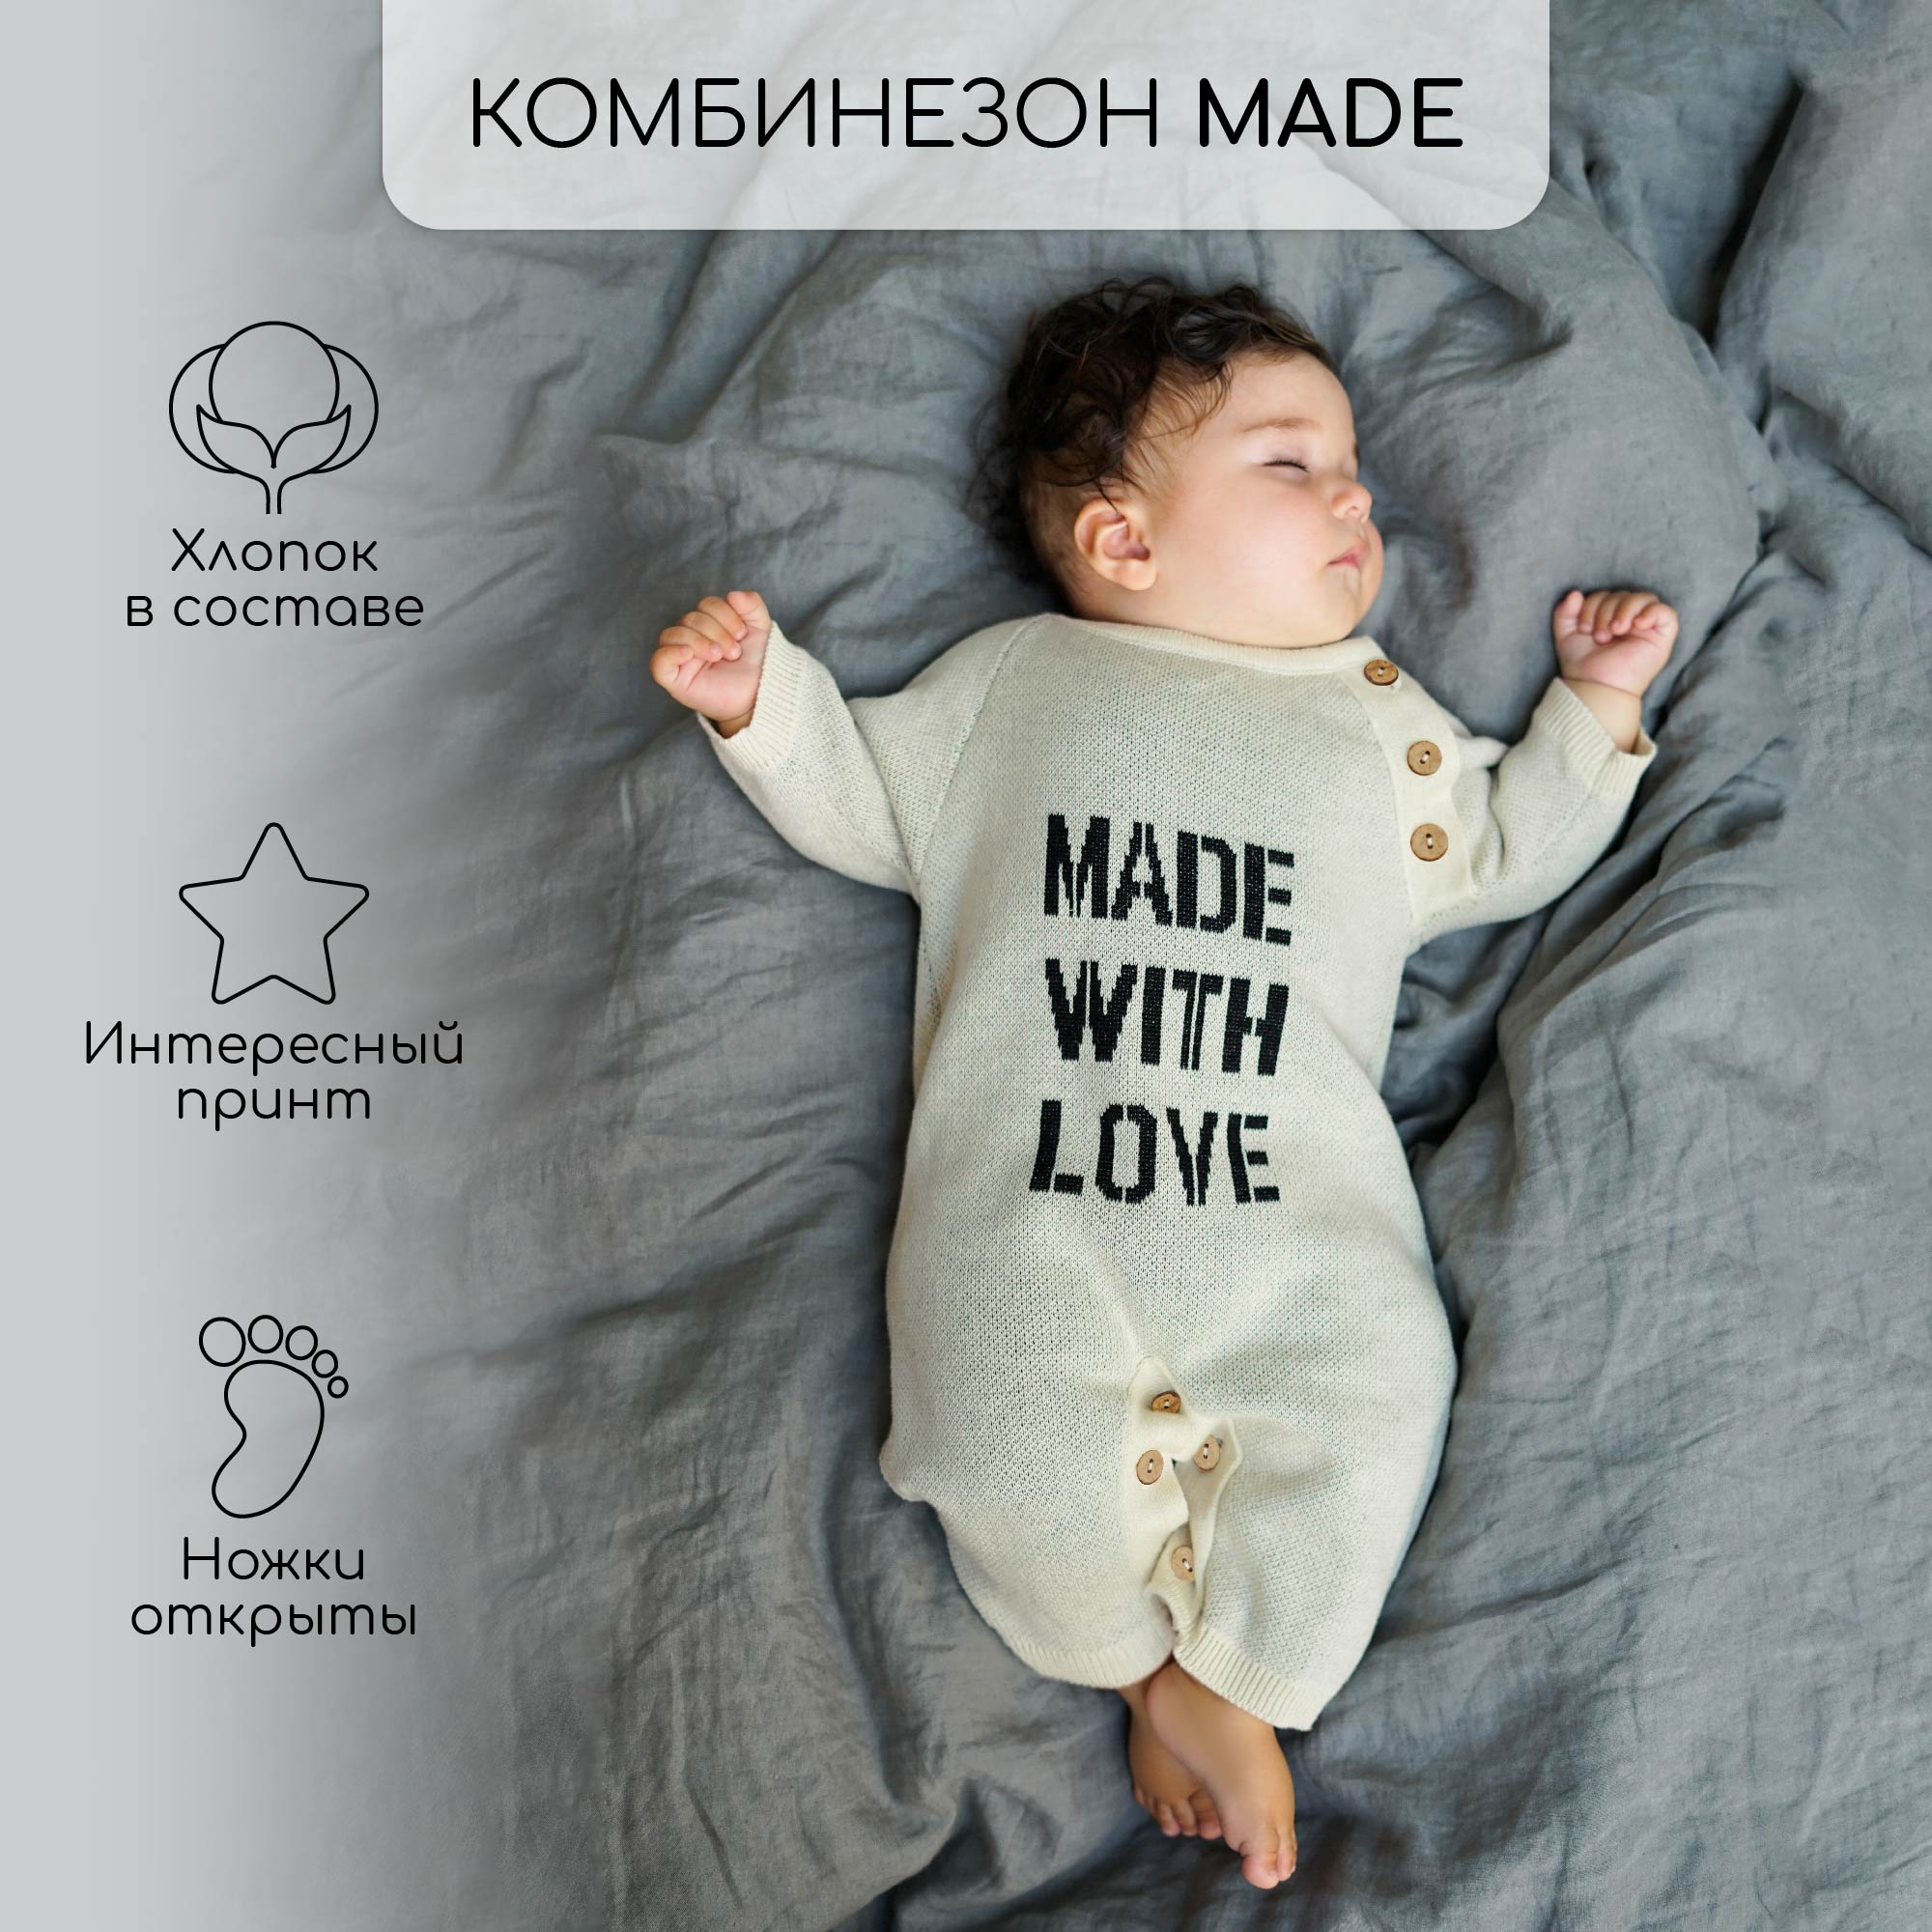 Комбинезон вязаный детский Pure Love Made, демисезонный, молочный, размер 74 вязаный детский плед nobodinoz so natural карамельный 65 x 65 см